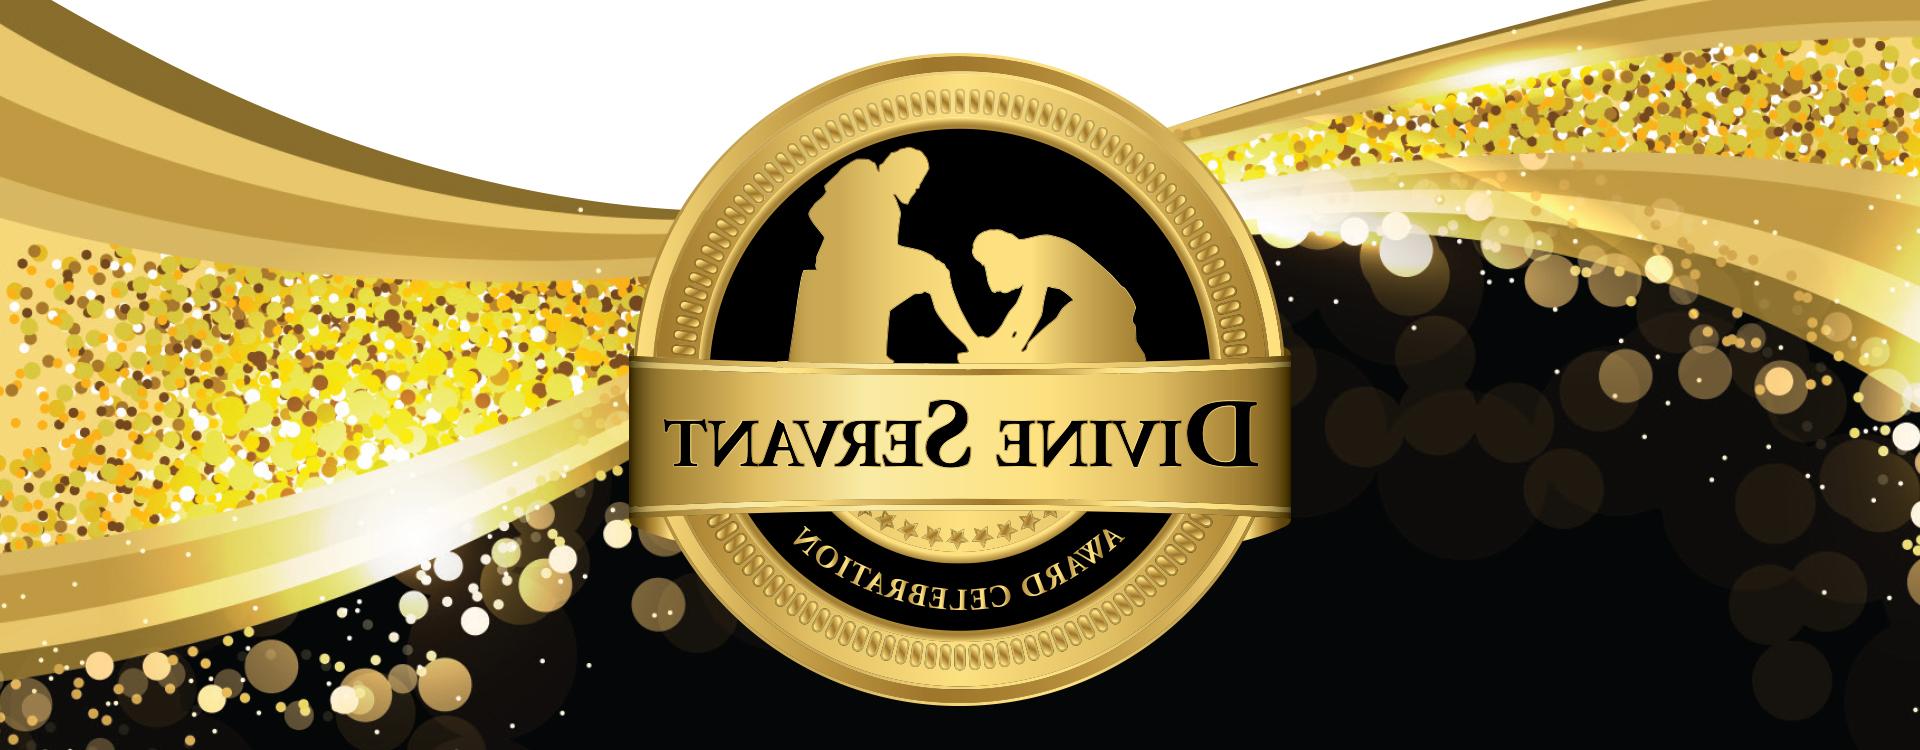 Divine Servant Award logo artwork